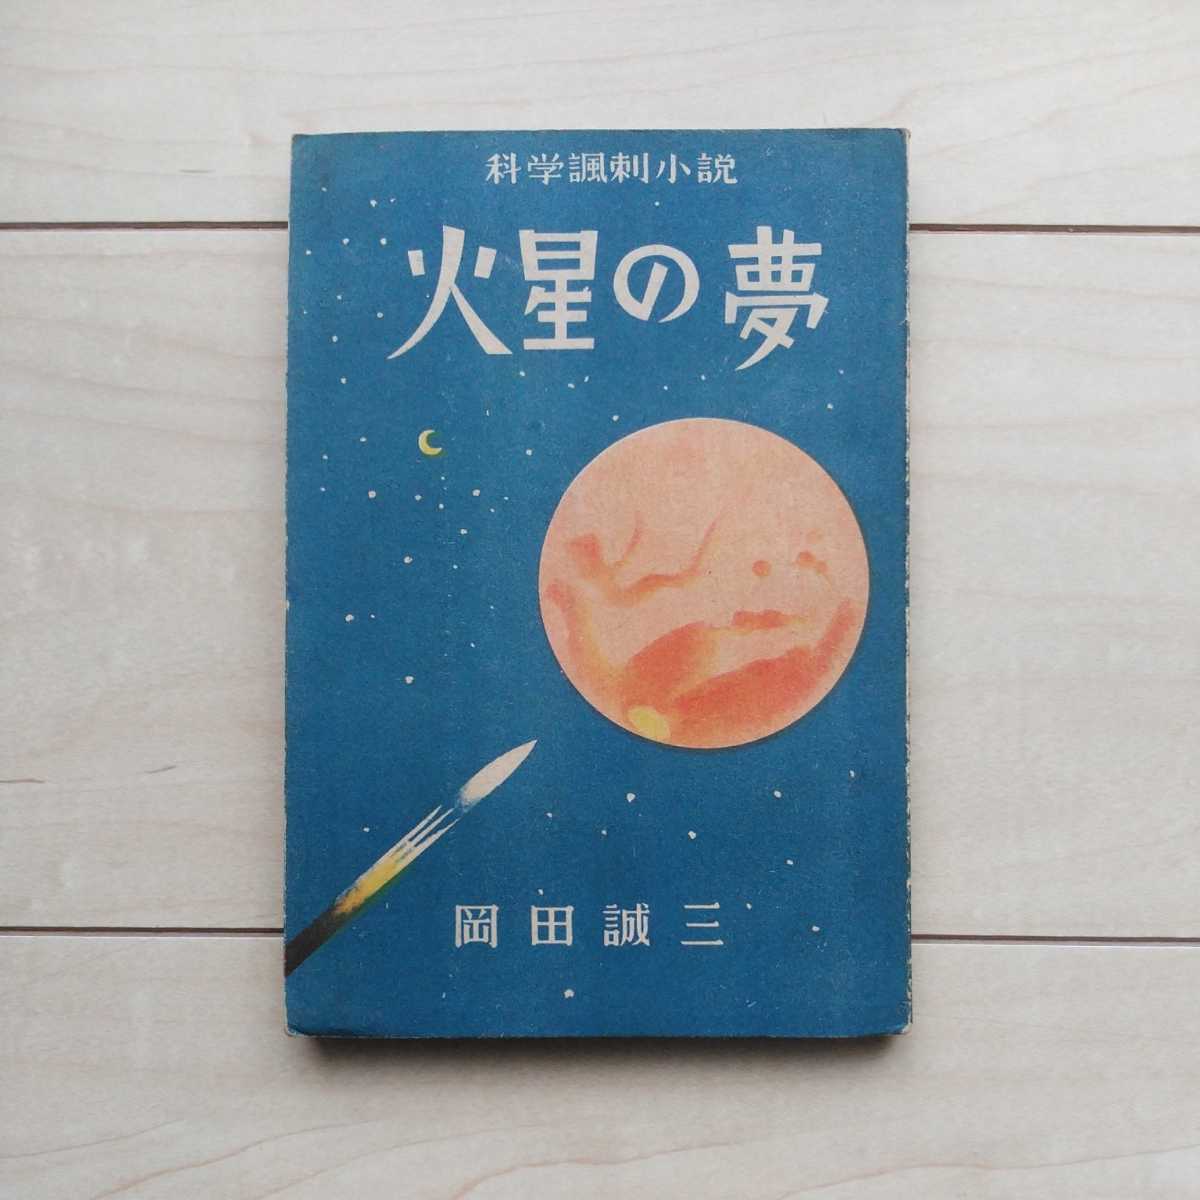 豪華ラッピング無料 □科学諷刺小説『火星の夢』岡田誠三著。昭和22年